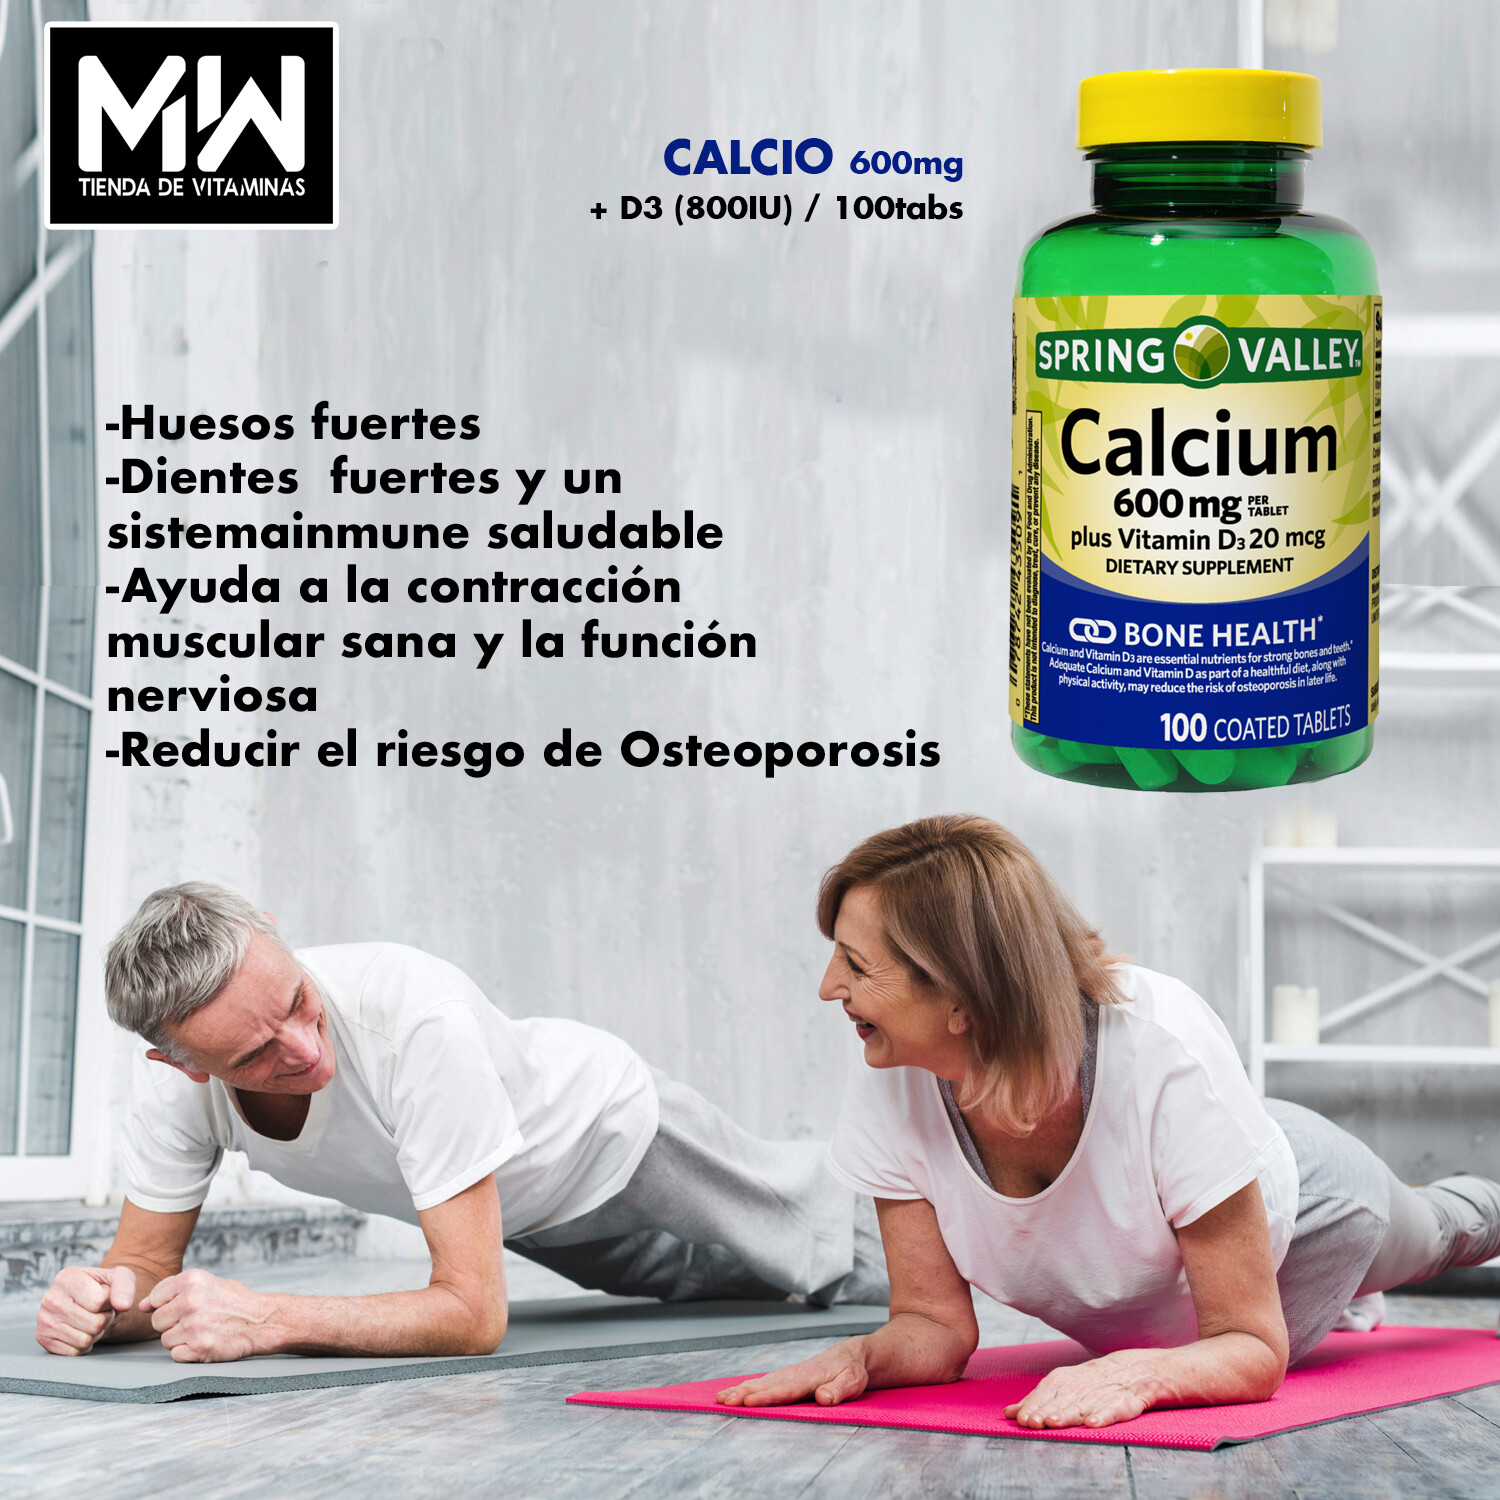 Calcio / Calcium 600 mg. + D3 800 IU 100 Tabs.